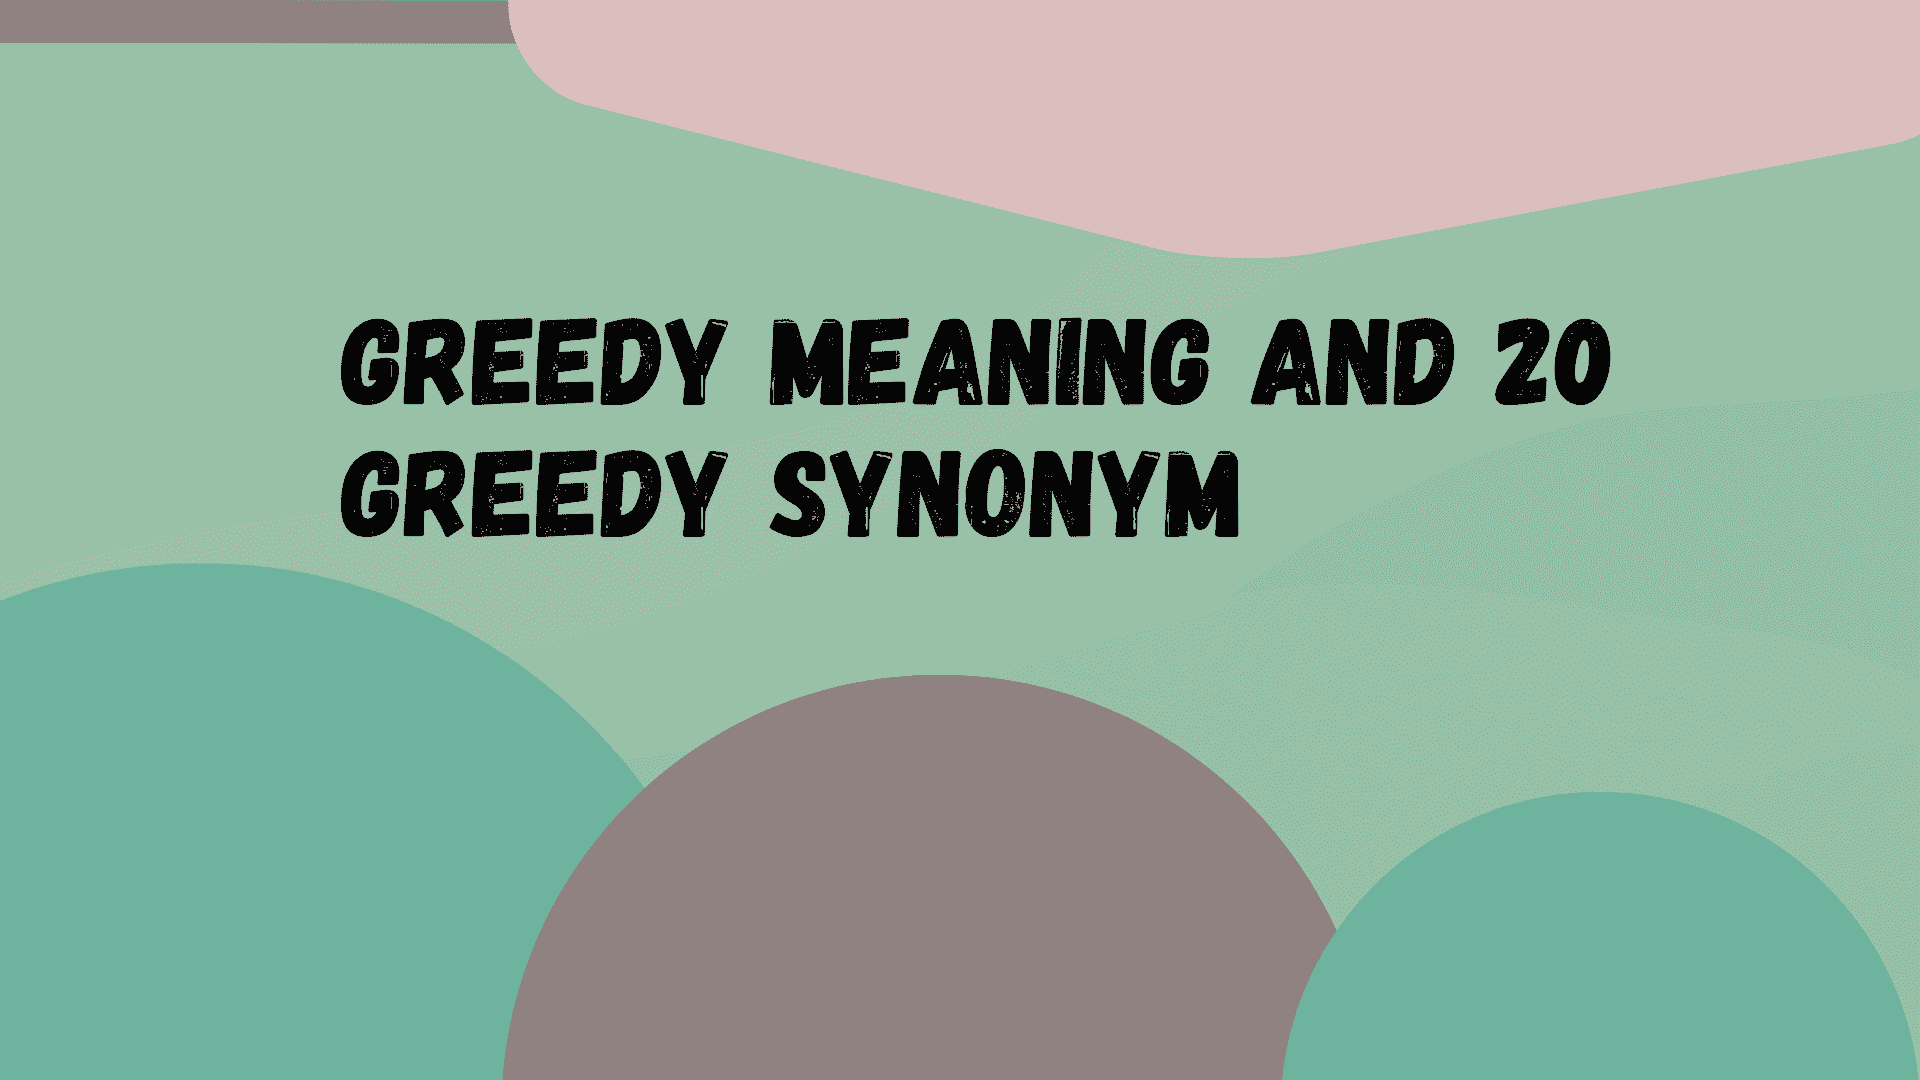 Greedy meaning and 20 greedy synonym